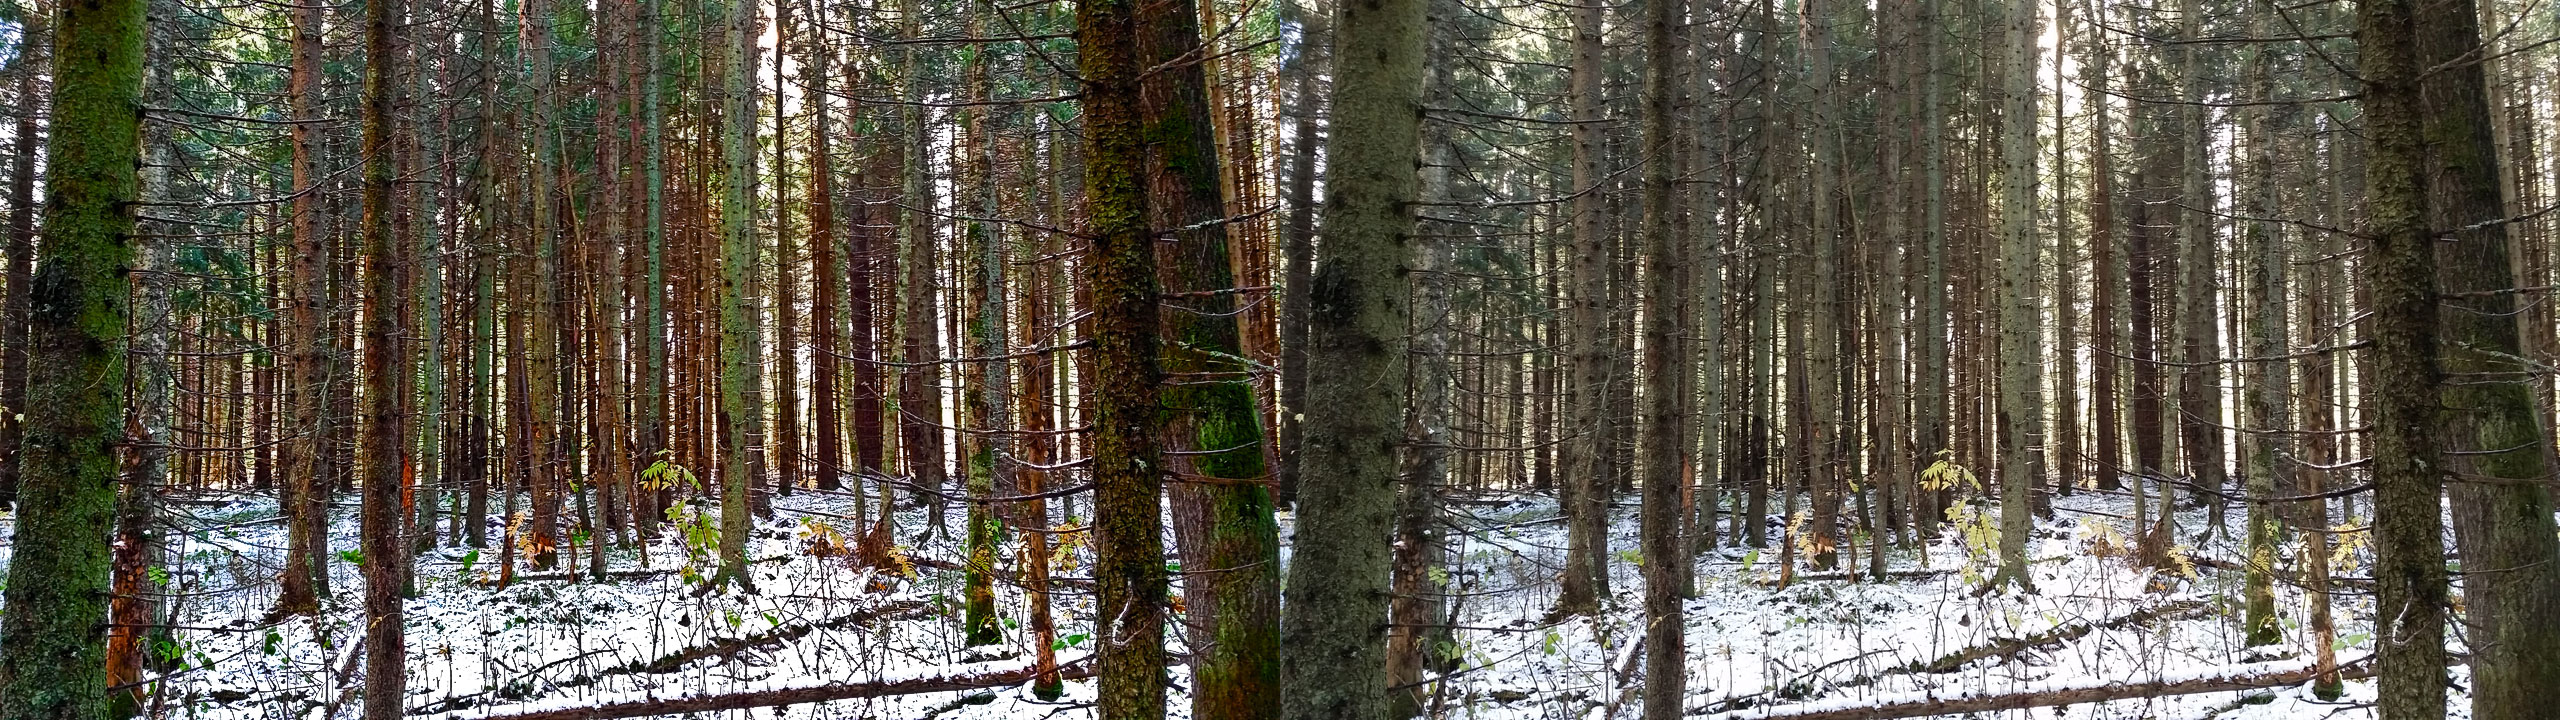 В лесу. В левой части обработанный по процессу кадр, а в правой оригинальное изображение.